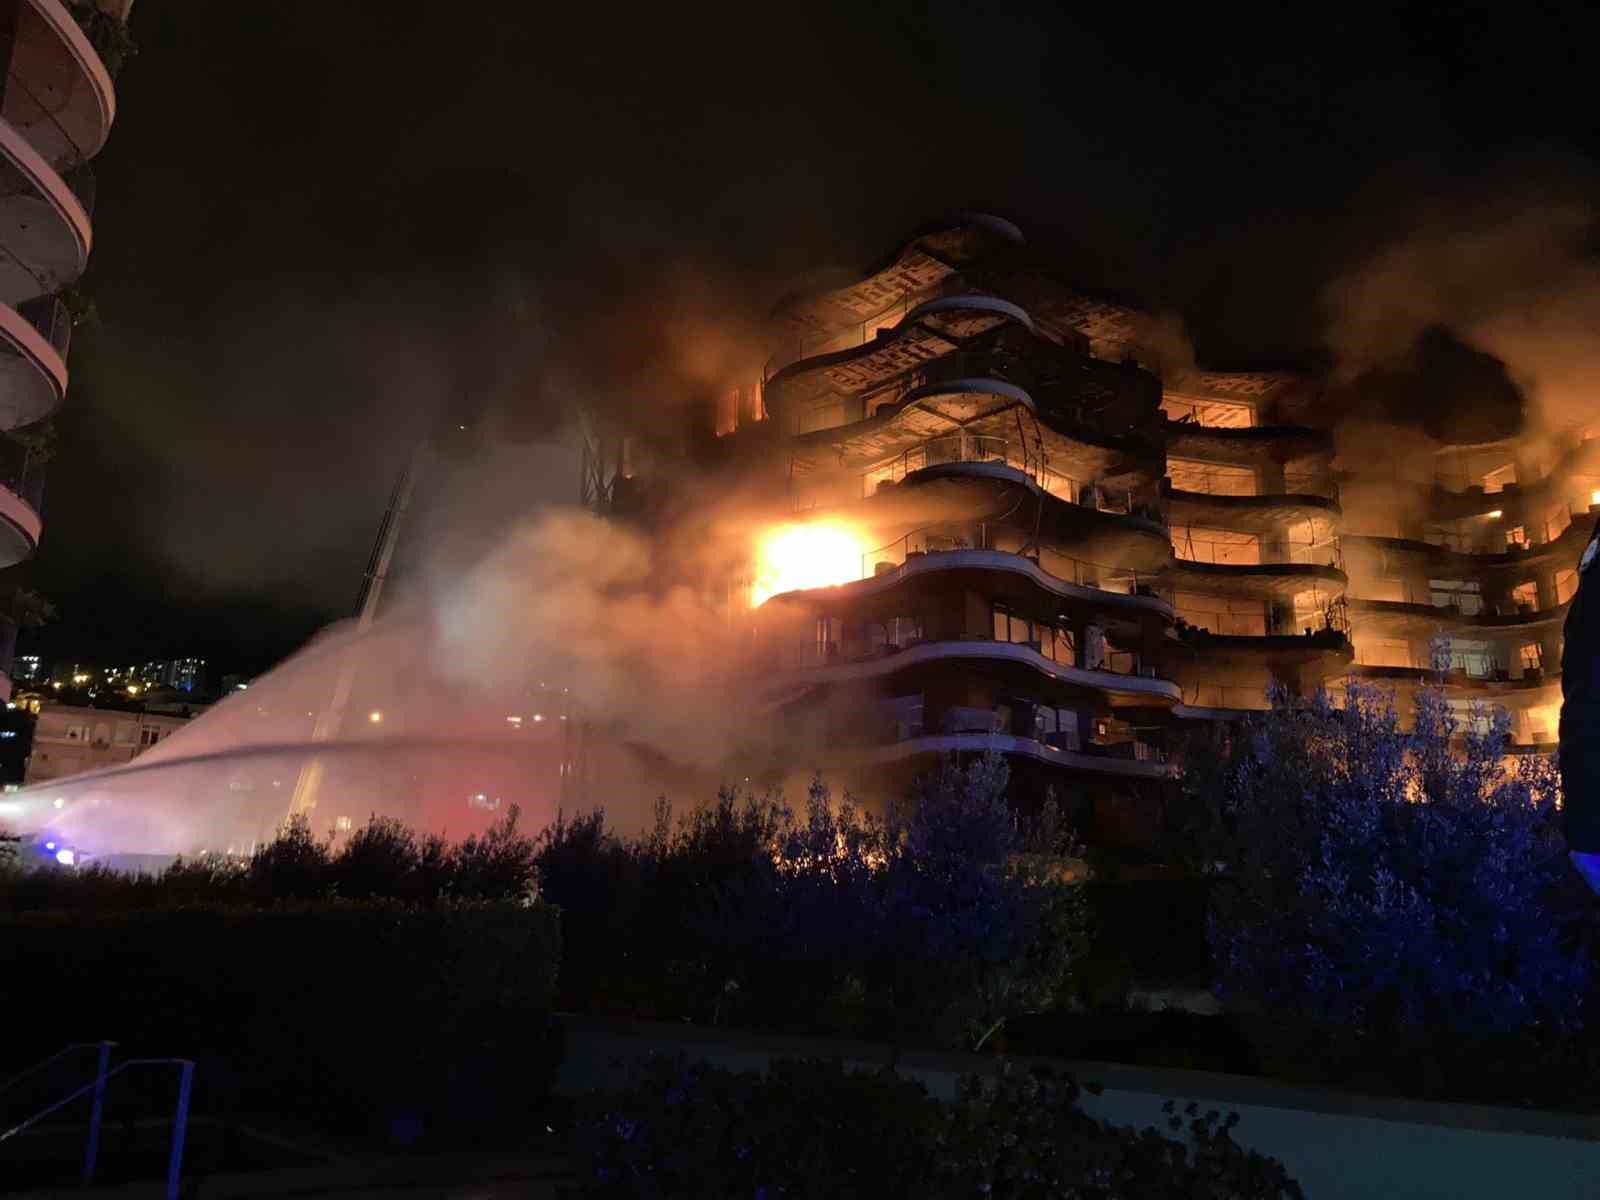 İzmir’de Folkart Sitesi’nde büyük yangın devam ediyor